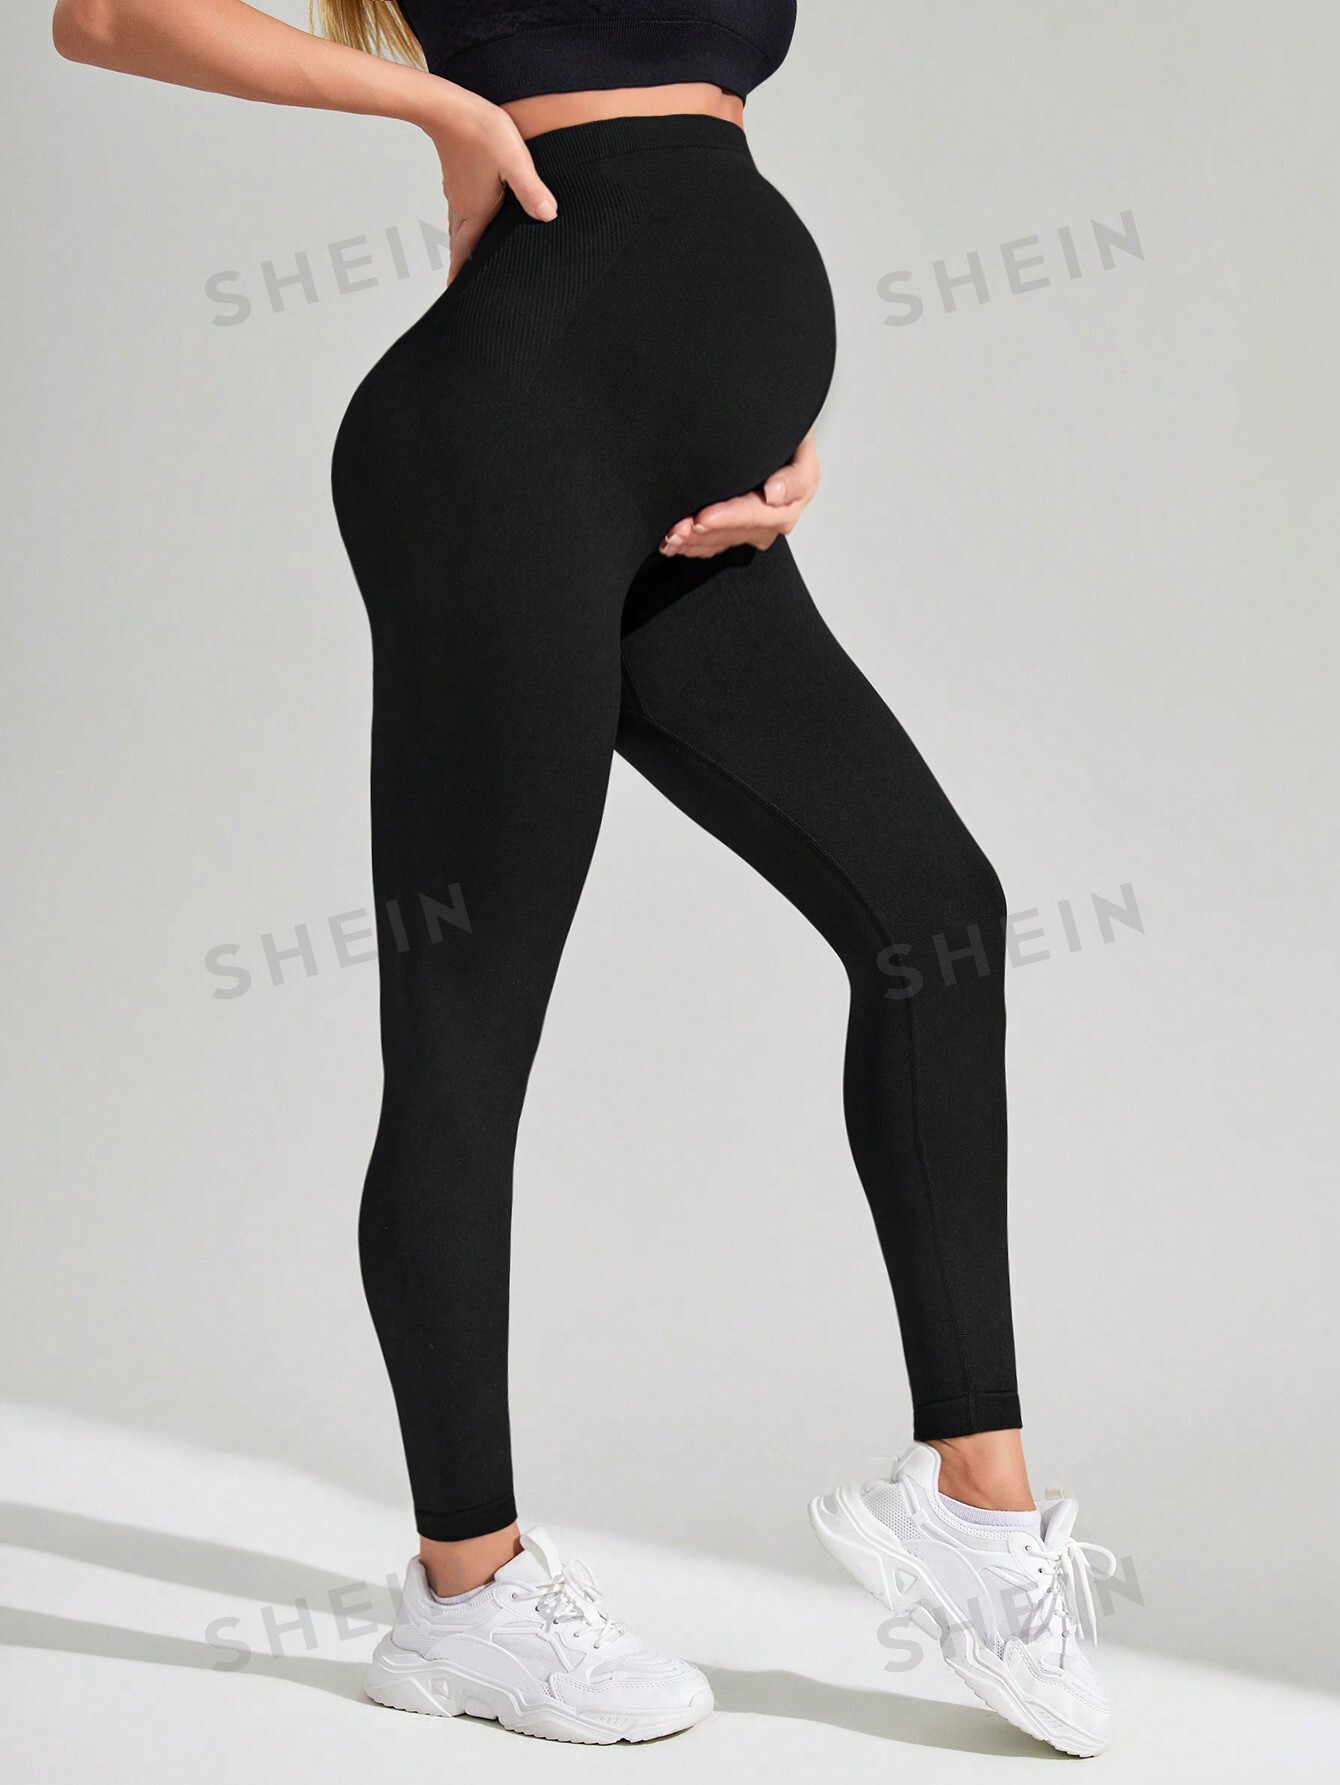 Бесшовные спортивные леггинсы для йоги SHEIN для беременных, черный женские штаны для йоги спортивные леггинсы спортивная одежда эластичные спортивные леггинсы для спортзала бесшовные женские леггинсы с